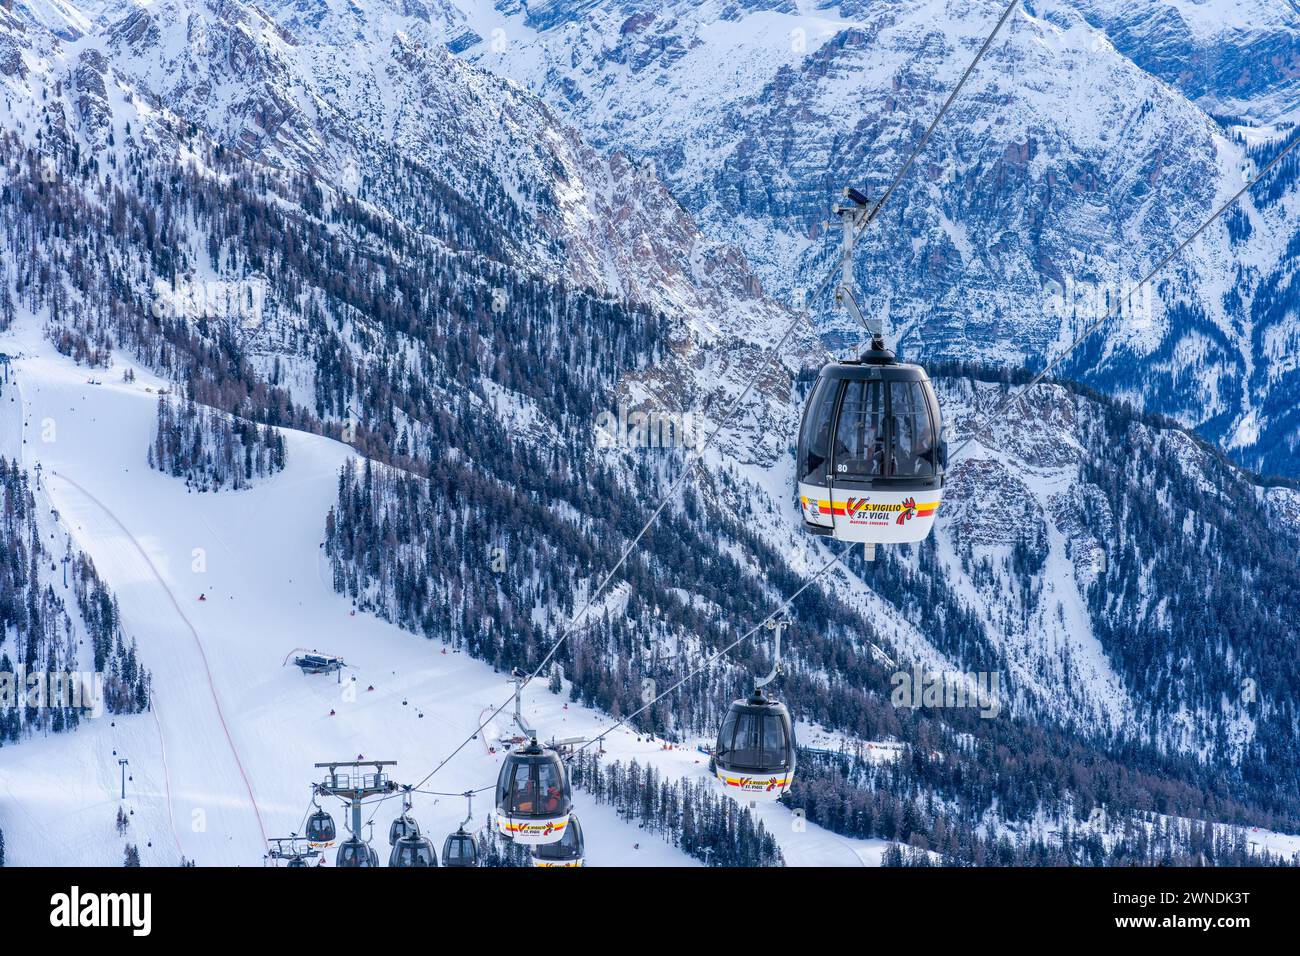 KRONPLATZ, ITALIE - 21 JANVIER 2024 : téléphérique emmène les skieurs et les snowboarders au sommet d'une montagne à la Kronplatz, une destination populaire de sports d'hiver Banque D'Images